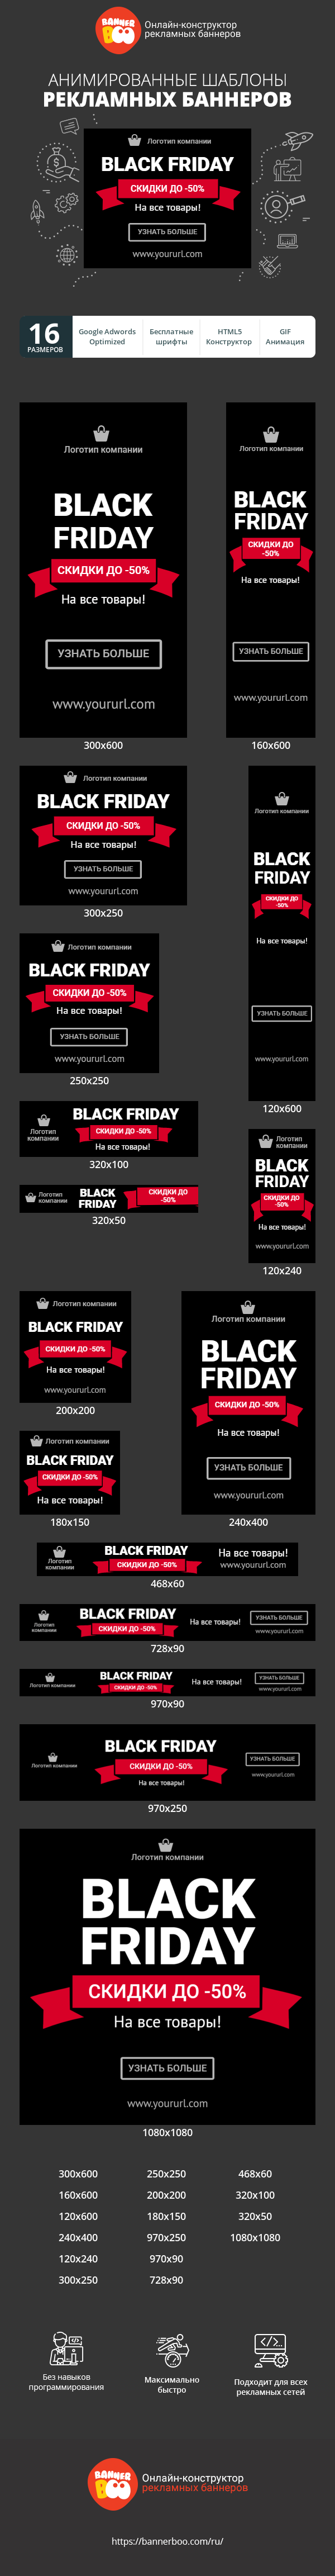 Шаблон рекламного баннера — Black friday — скидки до -50%